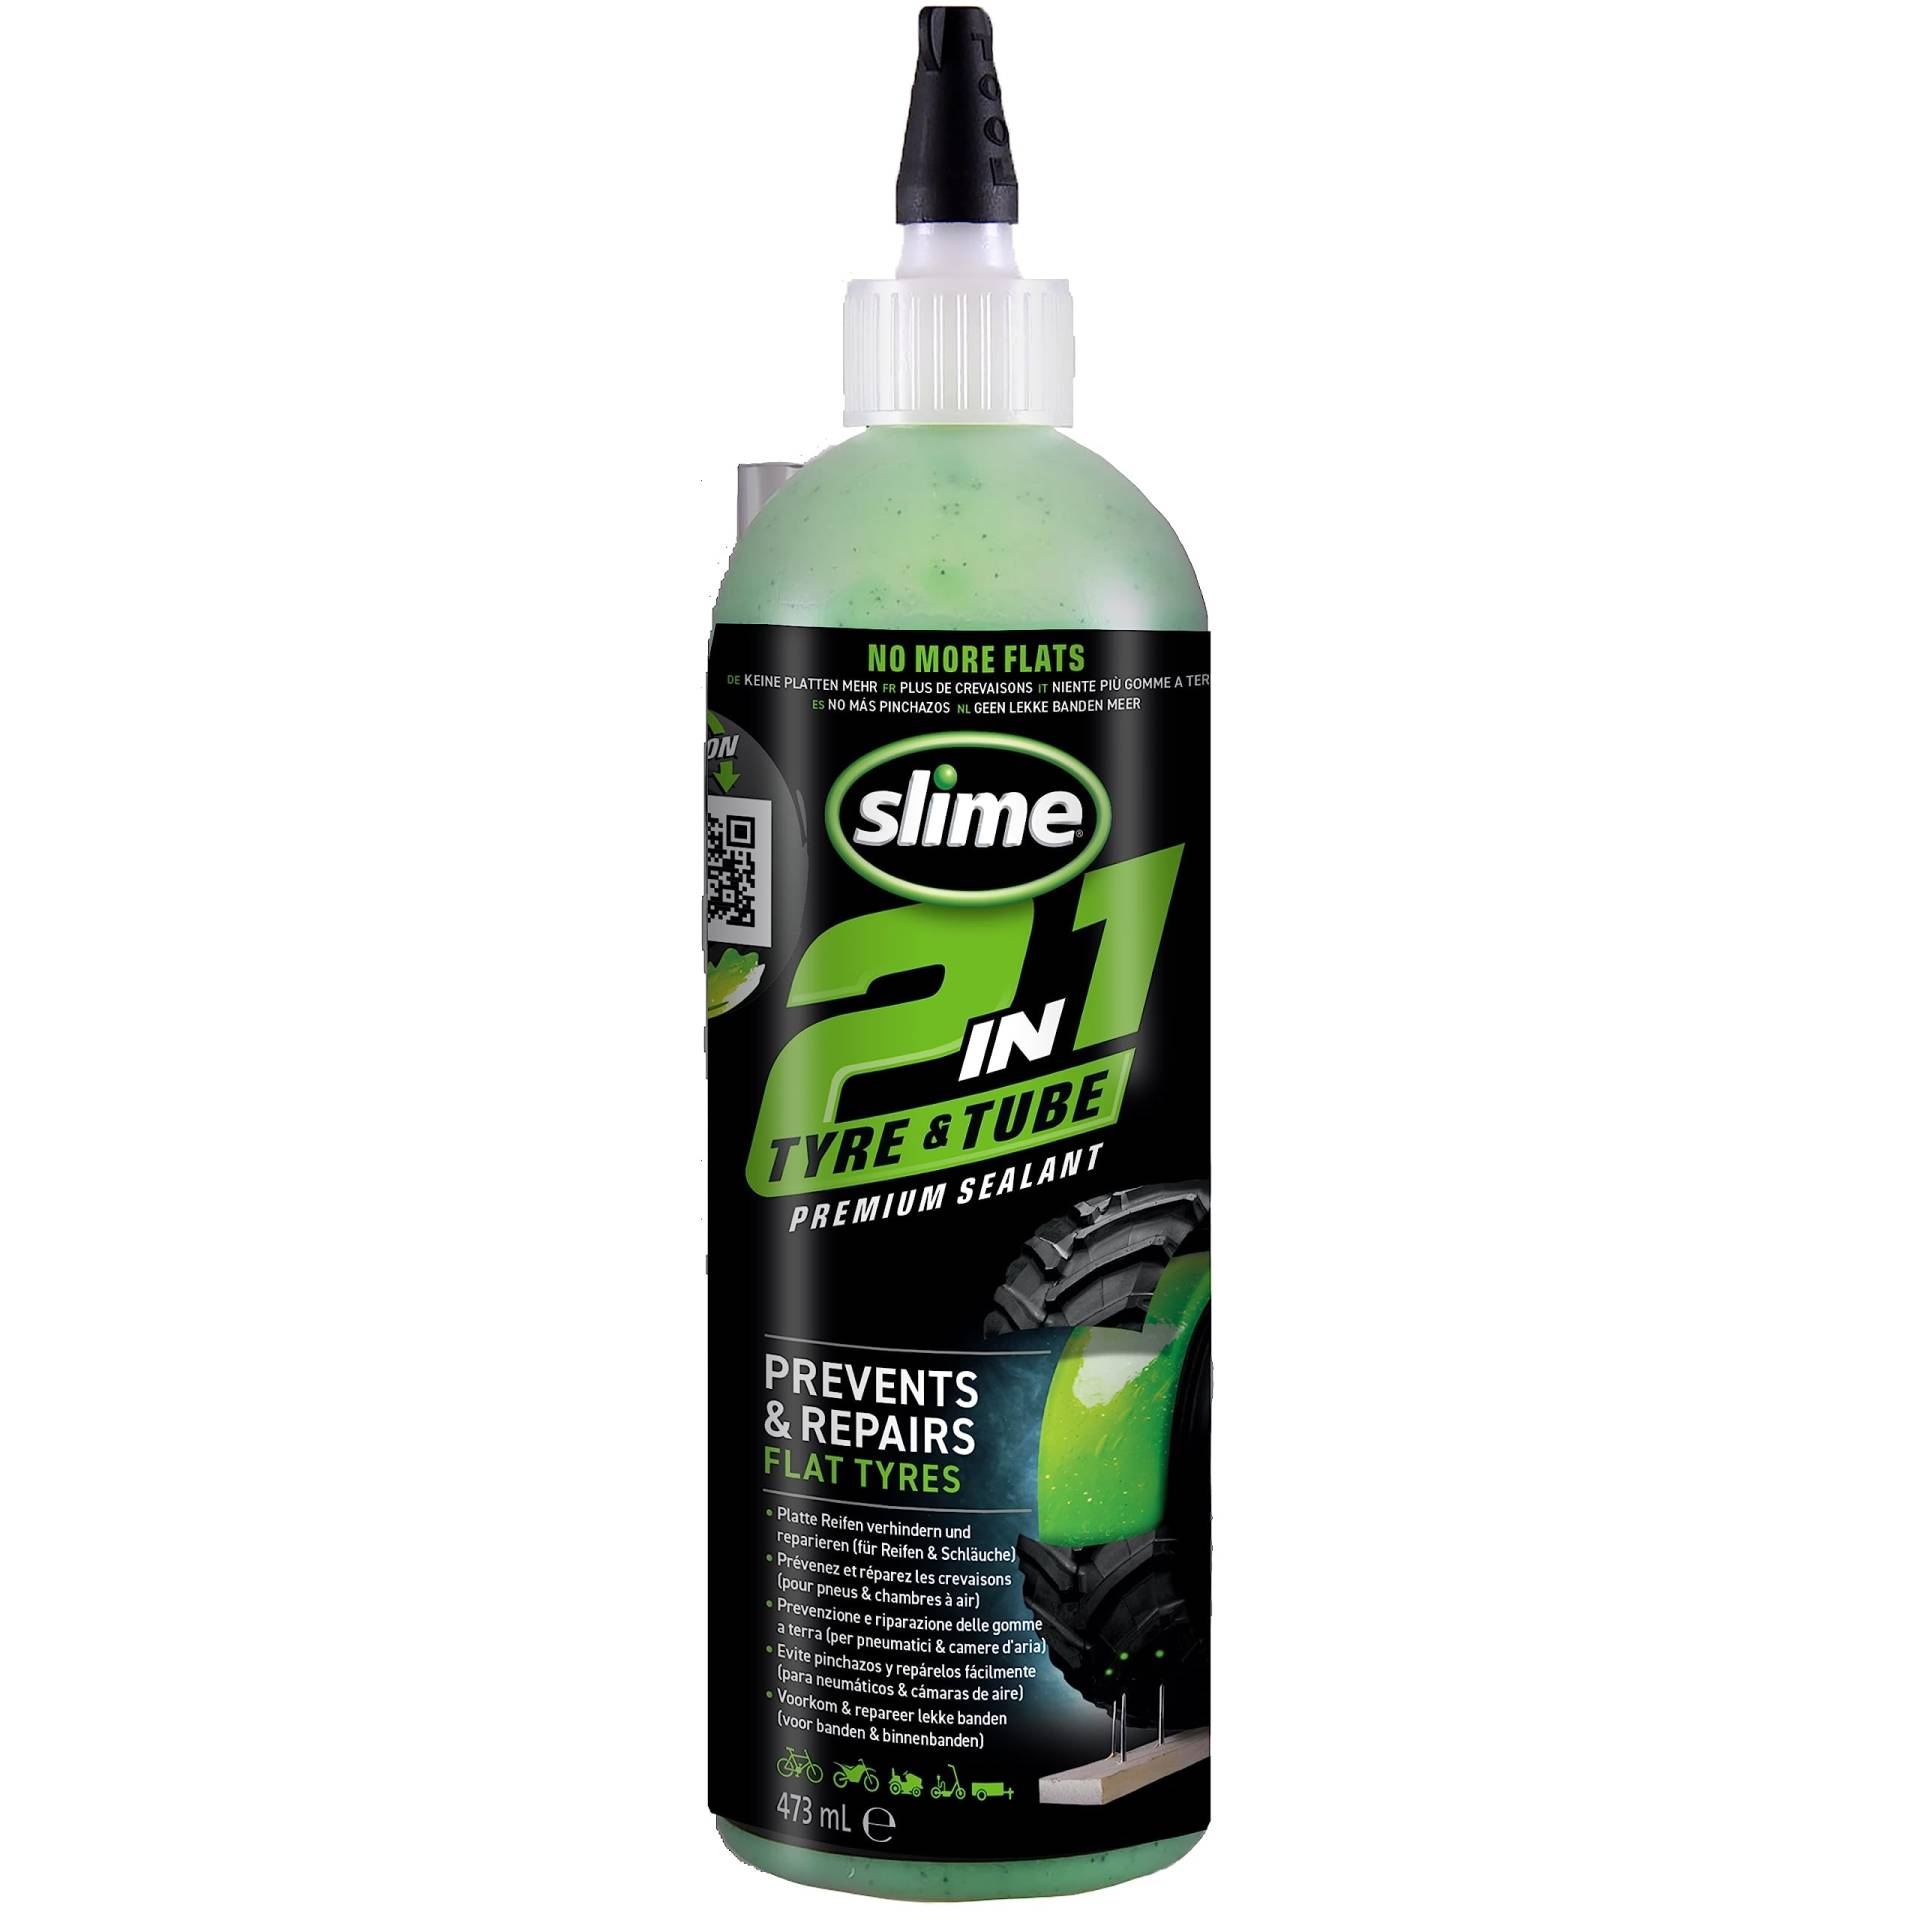 Slime 10193-51 2-in-1-Dichtmittel für Reifen- und Schlauchpannen, Premium, Prävention und Reparatur, geeignet für alle „Off-Highway“-Reifen und -Schläuche, ungiftig, umweltfreundlich, 473ml (16oz) von Slime